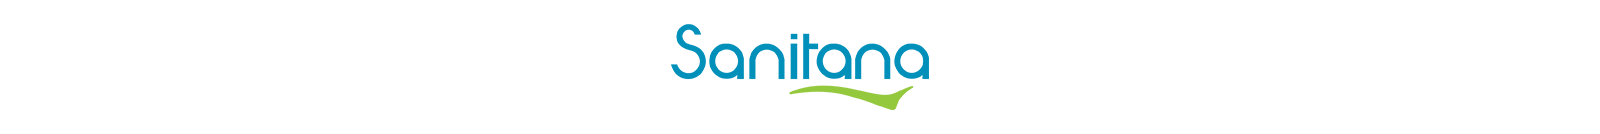 Logo-Sanitana-trasp-1600x134-(1).png